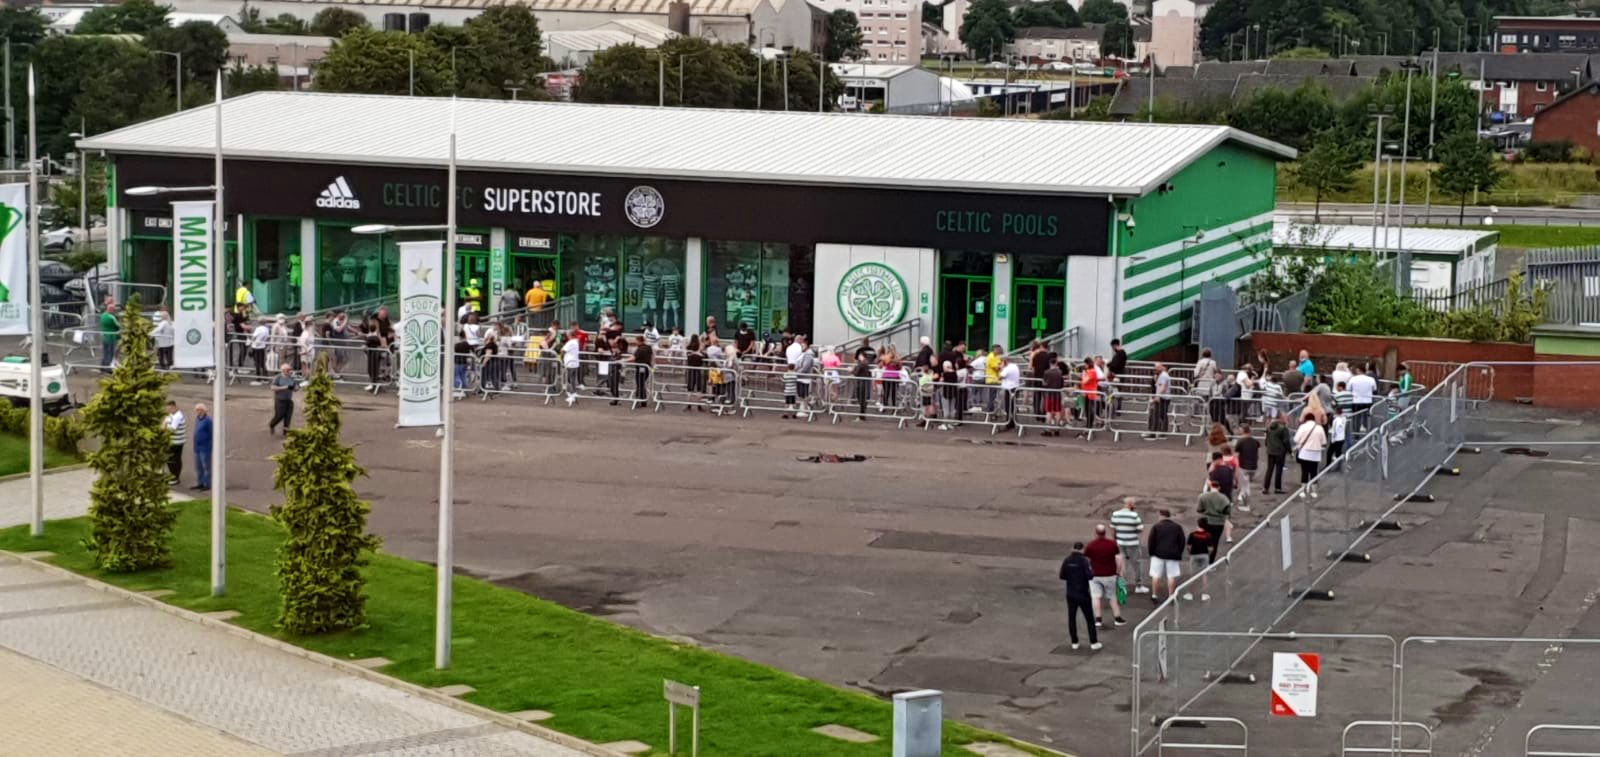 Celtic FC Shop (@CelticFCShop) / X